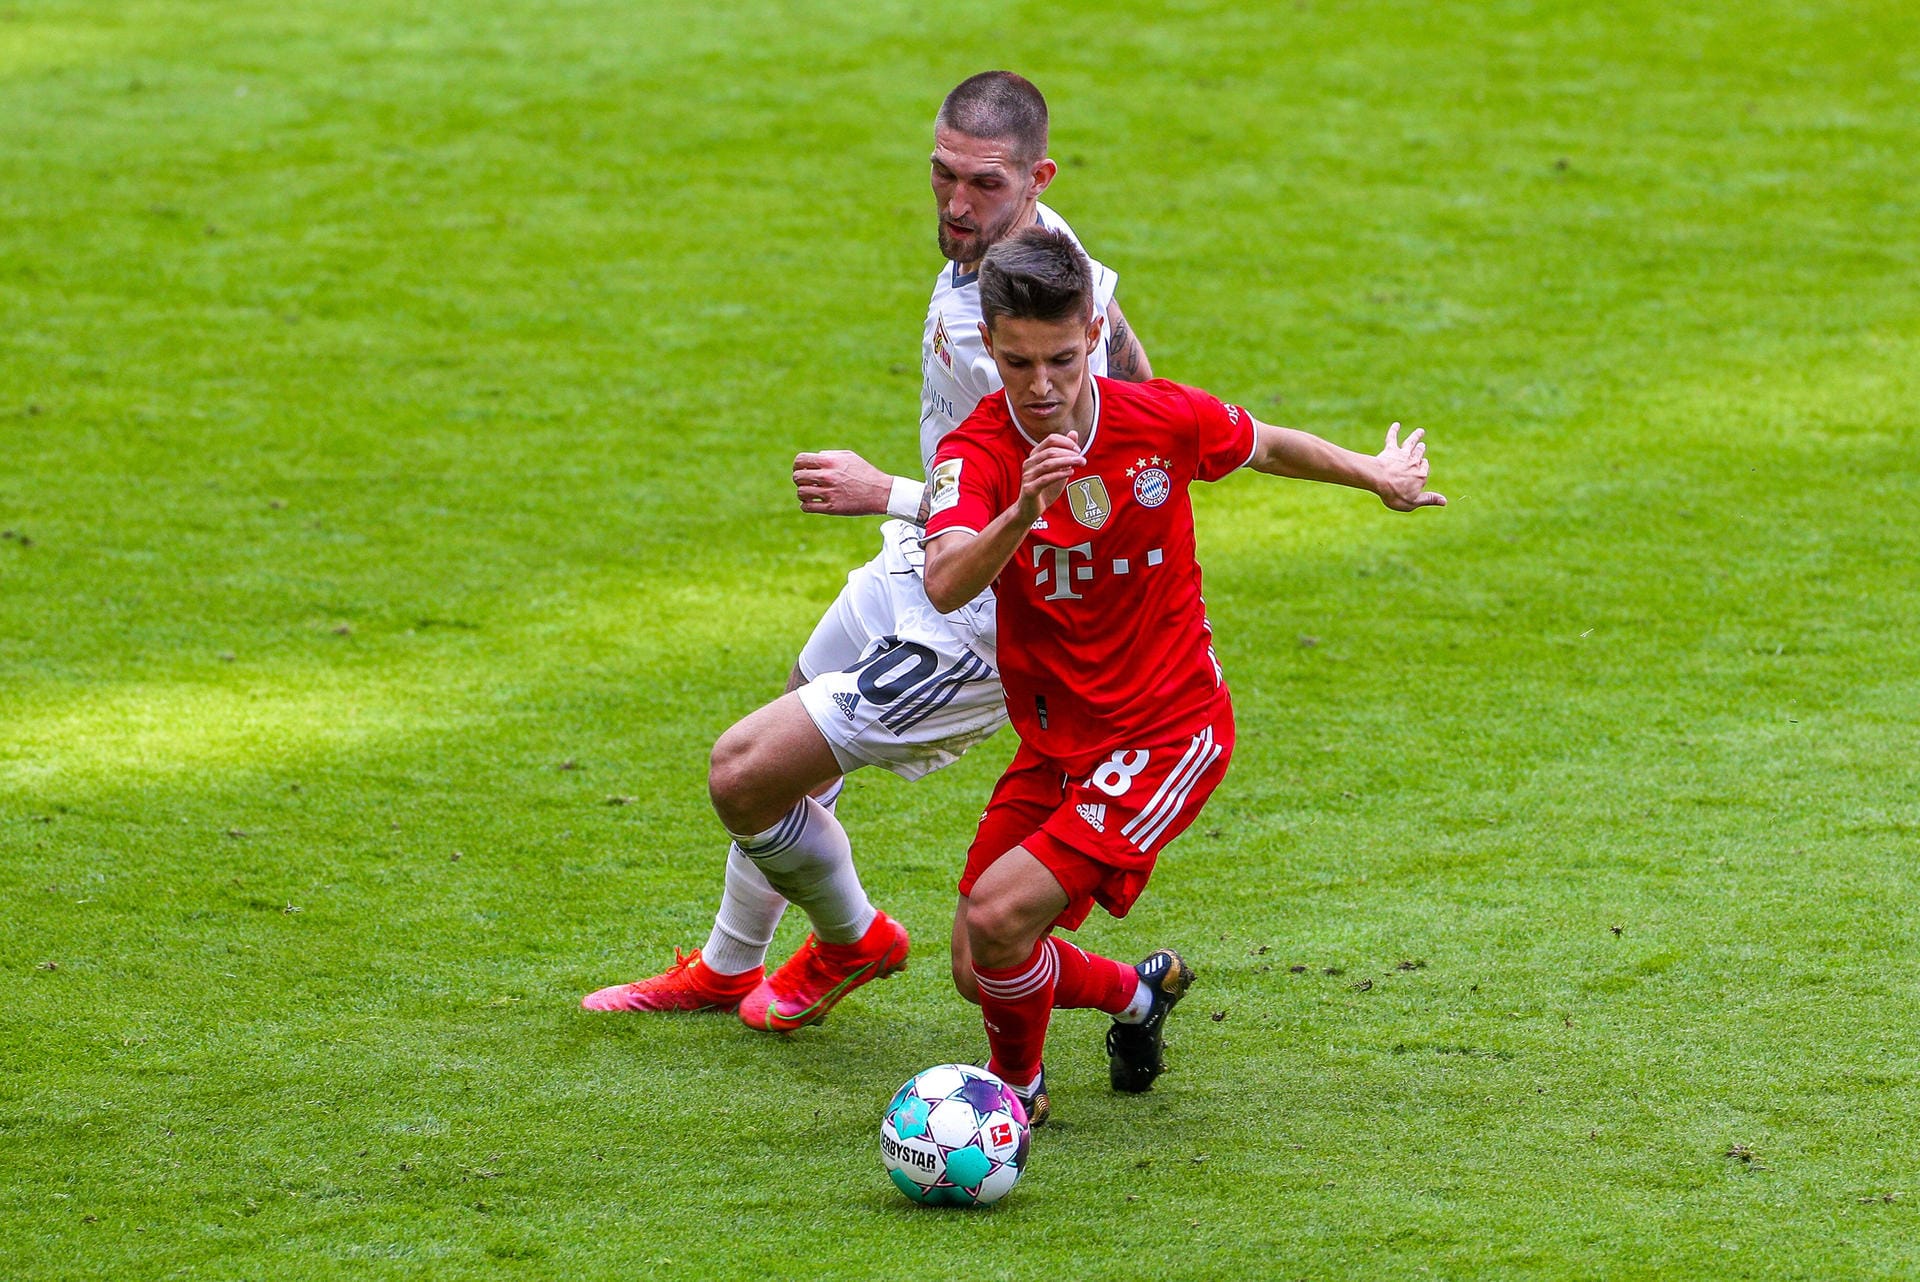 Nach nur einer Saison ist wieder Schluss in München: Tiago Dantas verlässt den FC Bayern – der Portugiese konnte sich nicht empfehlen. Doch der 20-Jährige ist nicht das erste Talent, das beim Rekordmeister scheitert. t-online zeigt Beispiele aus den letzten Jahren – erinnern Sie sich noch an alle?